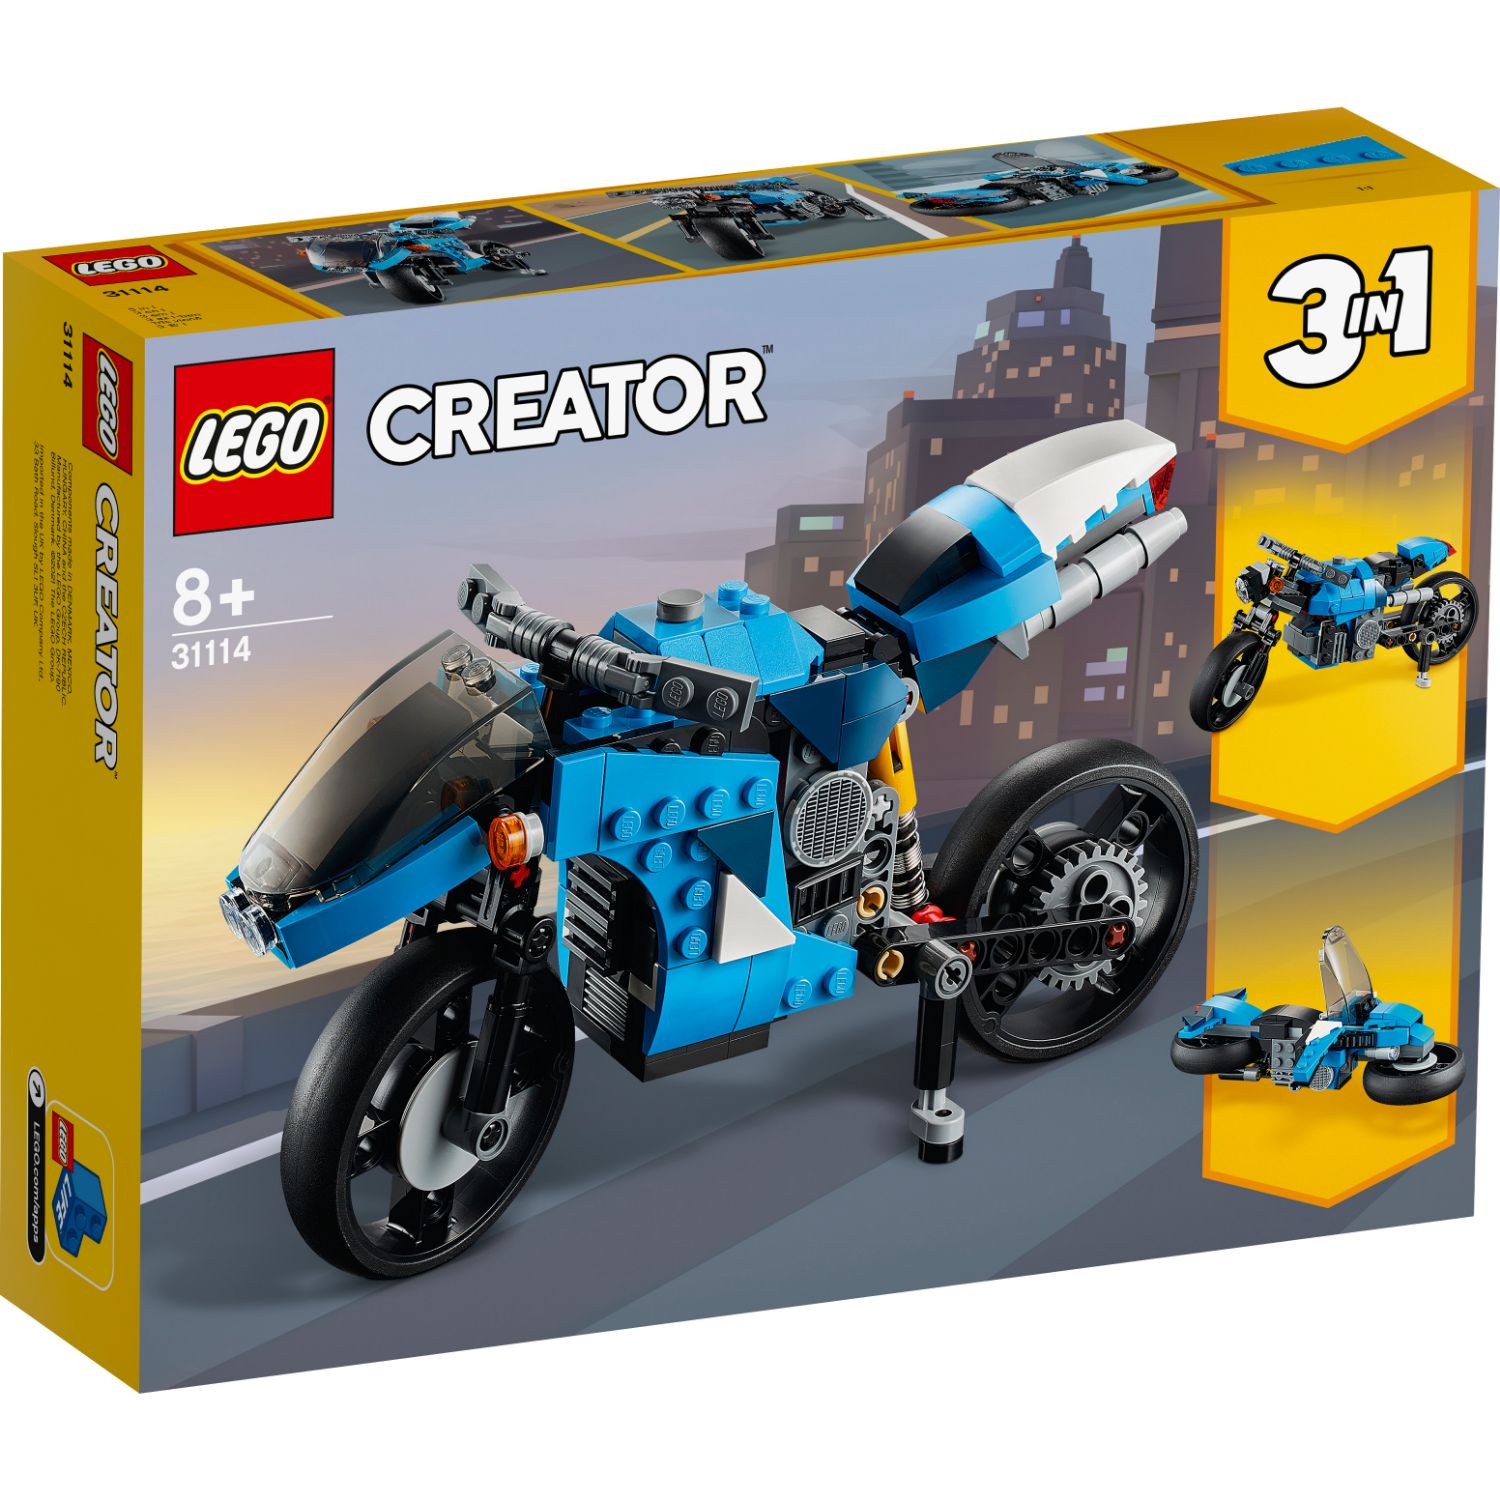 LEGO CREATOR 31114 3IN1 SNELLE MOTOR